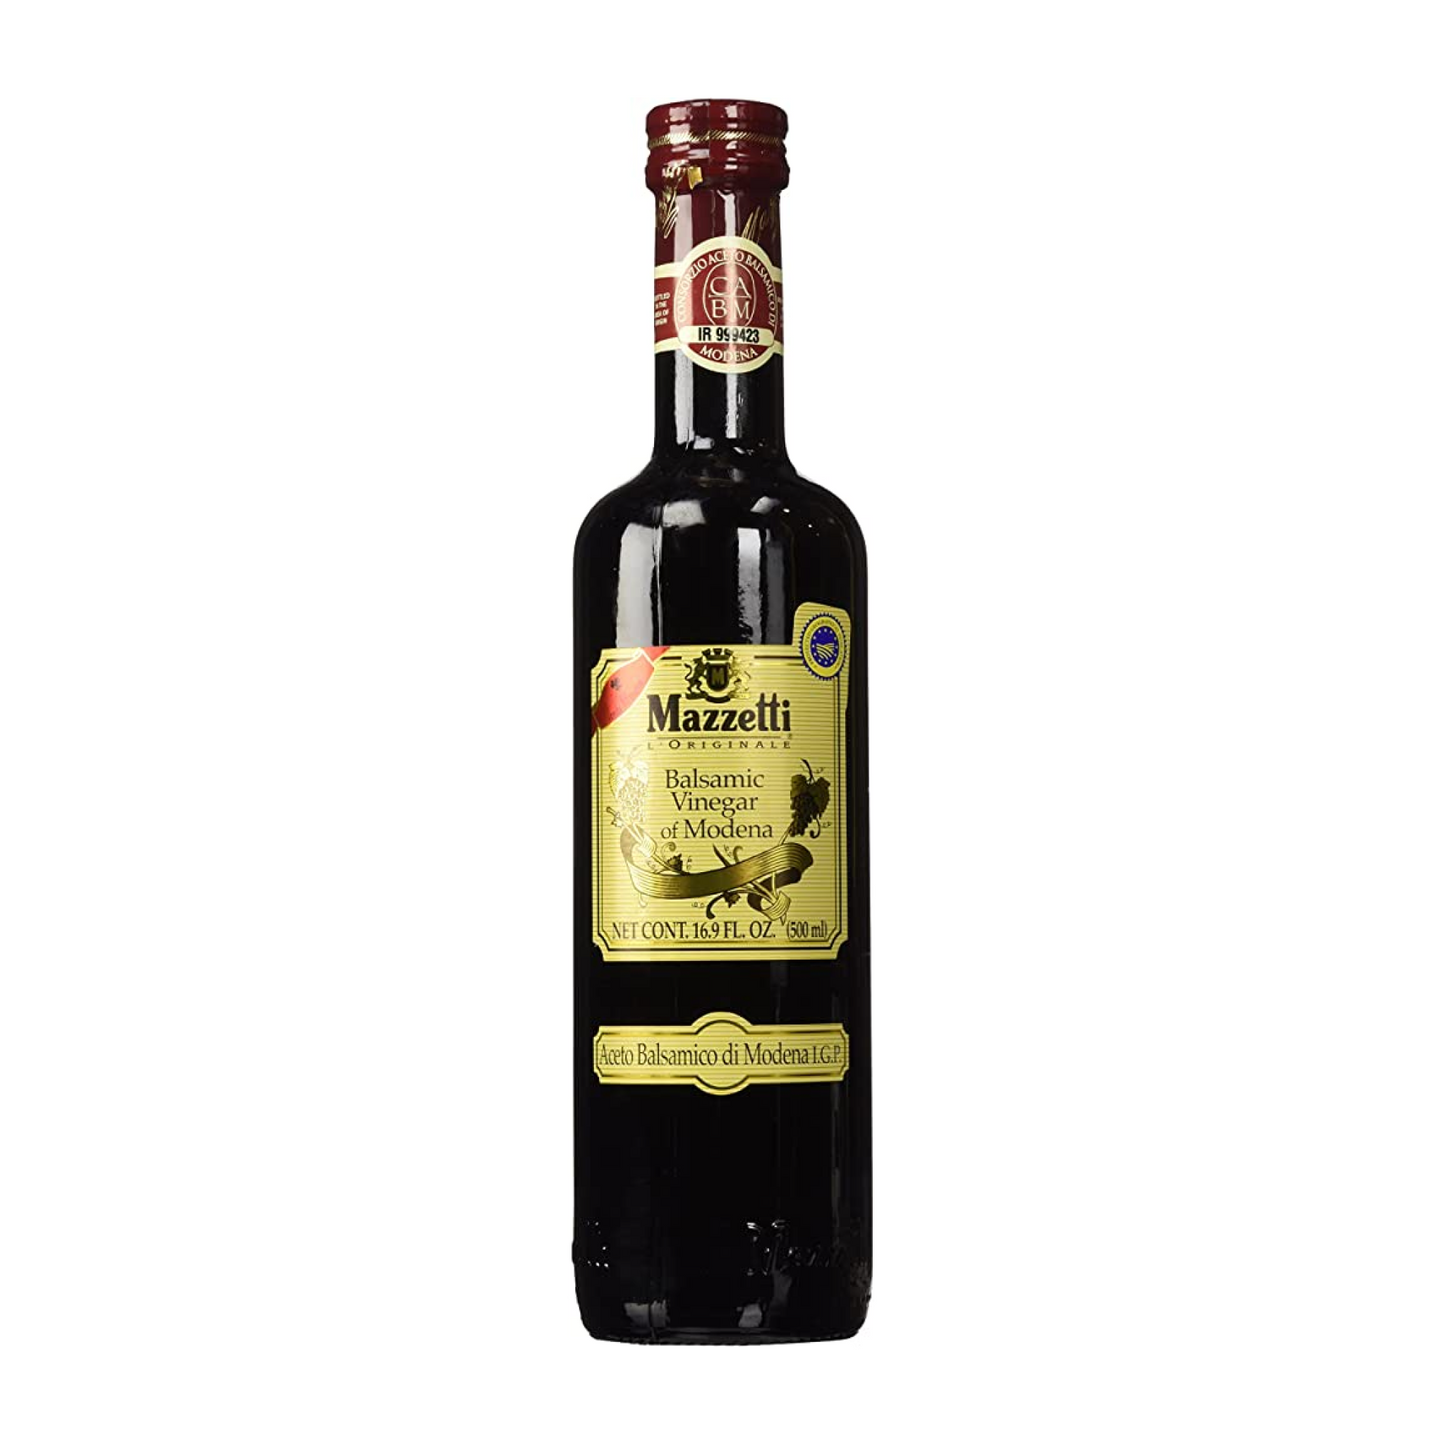 Mazzetti Balsamic Vinegar of Modena 500ml